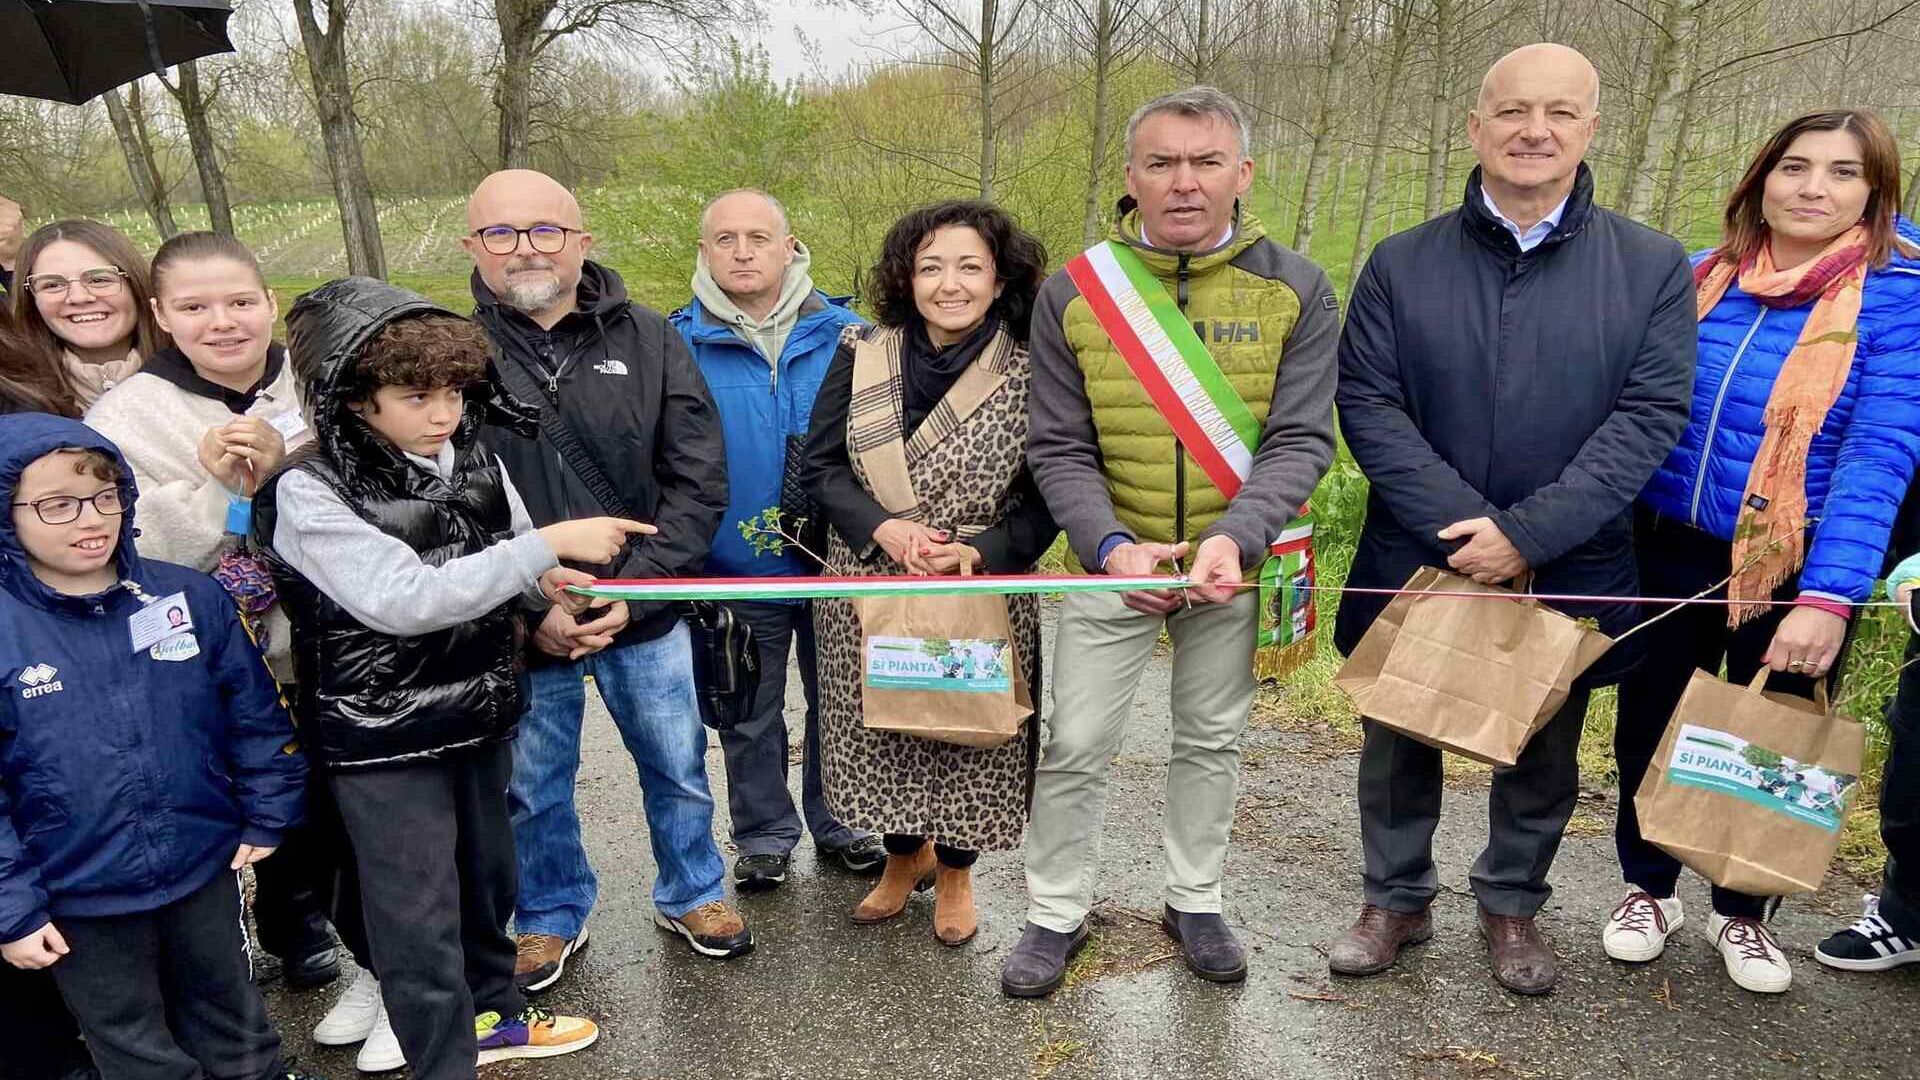 Reflorestação urbana: foram inauguradas duas novas florestas periurbanas, para 1084 árvores e arbustos e 9.000 metros quadrados de superfície, em Sissa Trecasali (Parma)